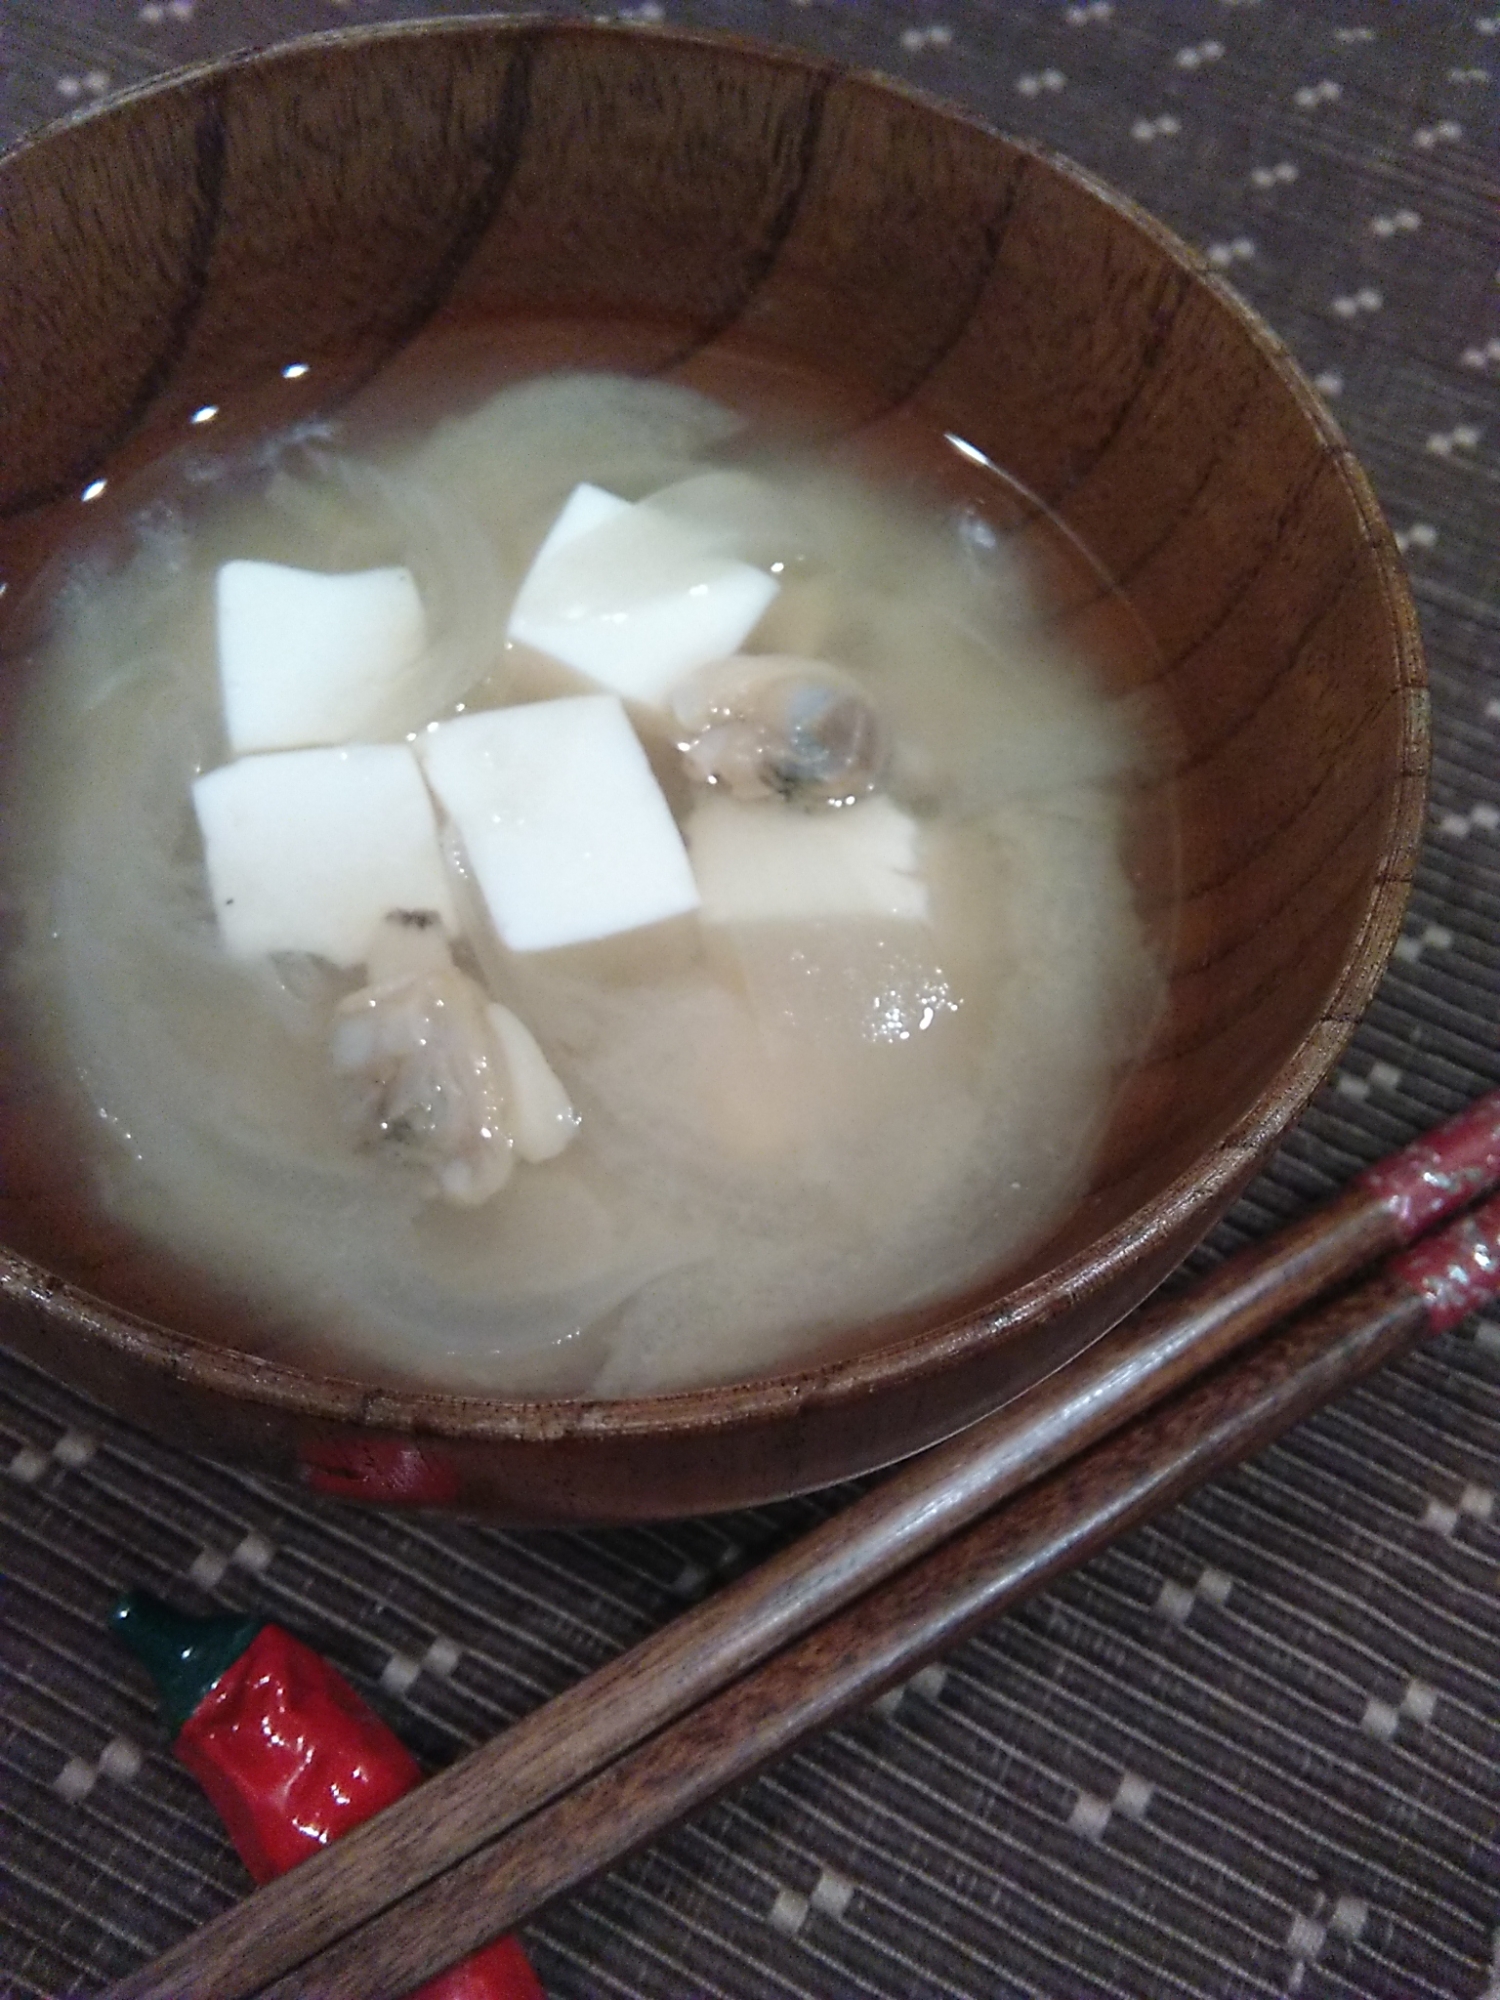 むきアサリと豆腐のお味噌汁♪